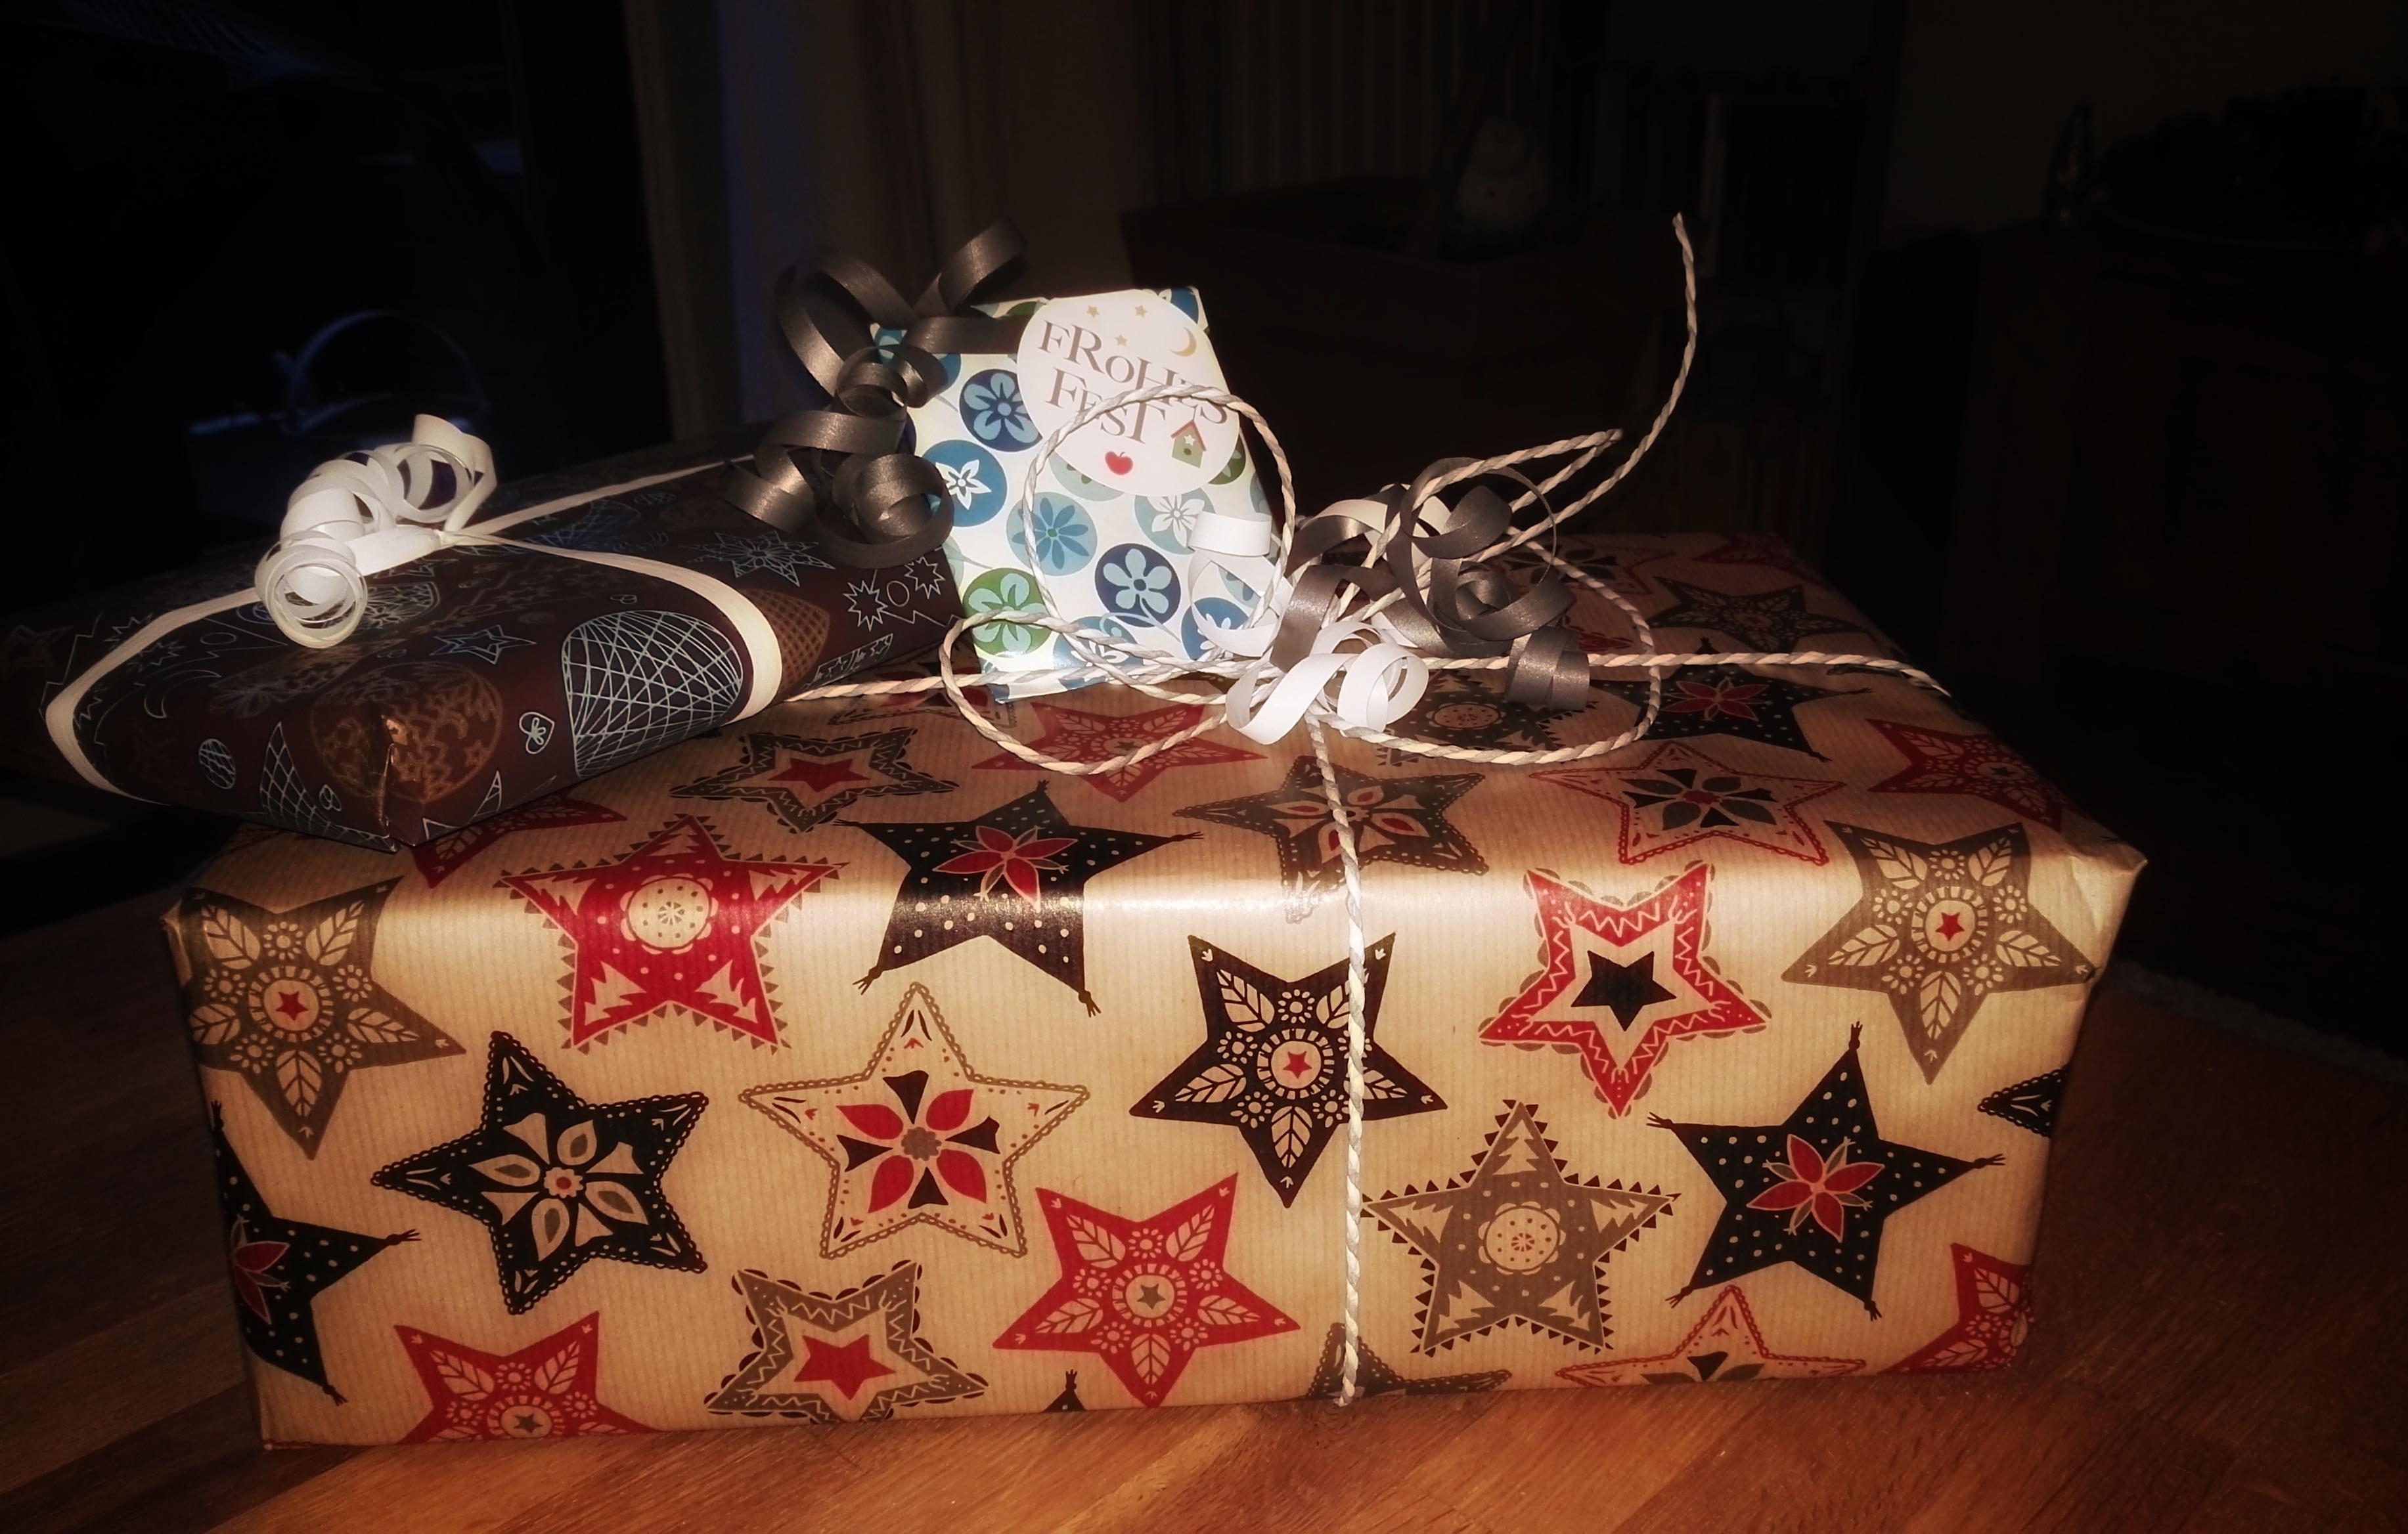 #Weihnachtsgeschenke schon alle zusammen? Oder werden die am Samstag geshoppt? 😀